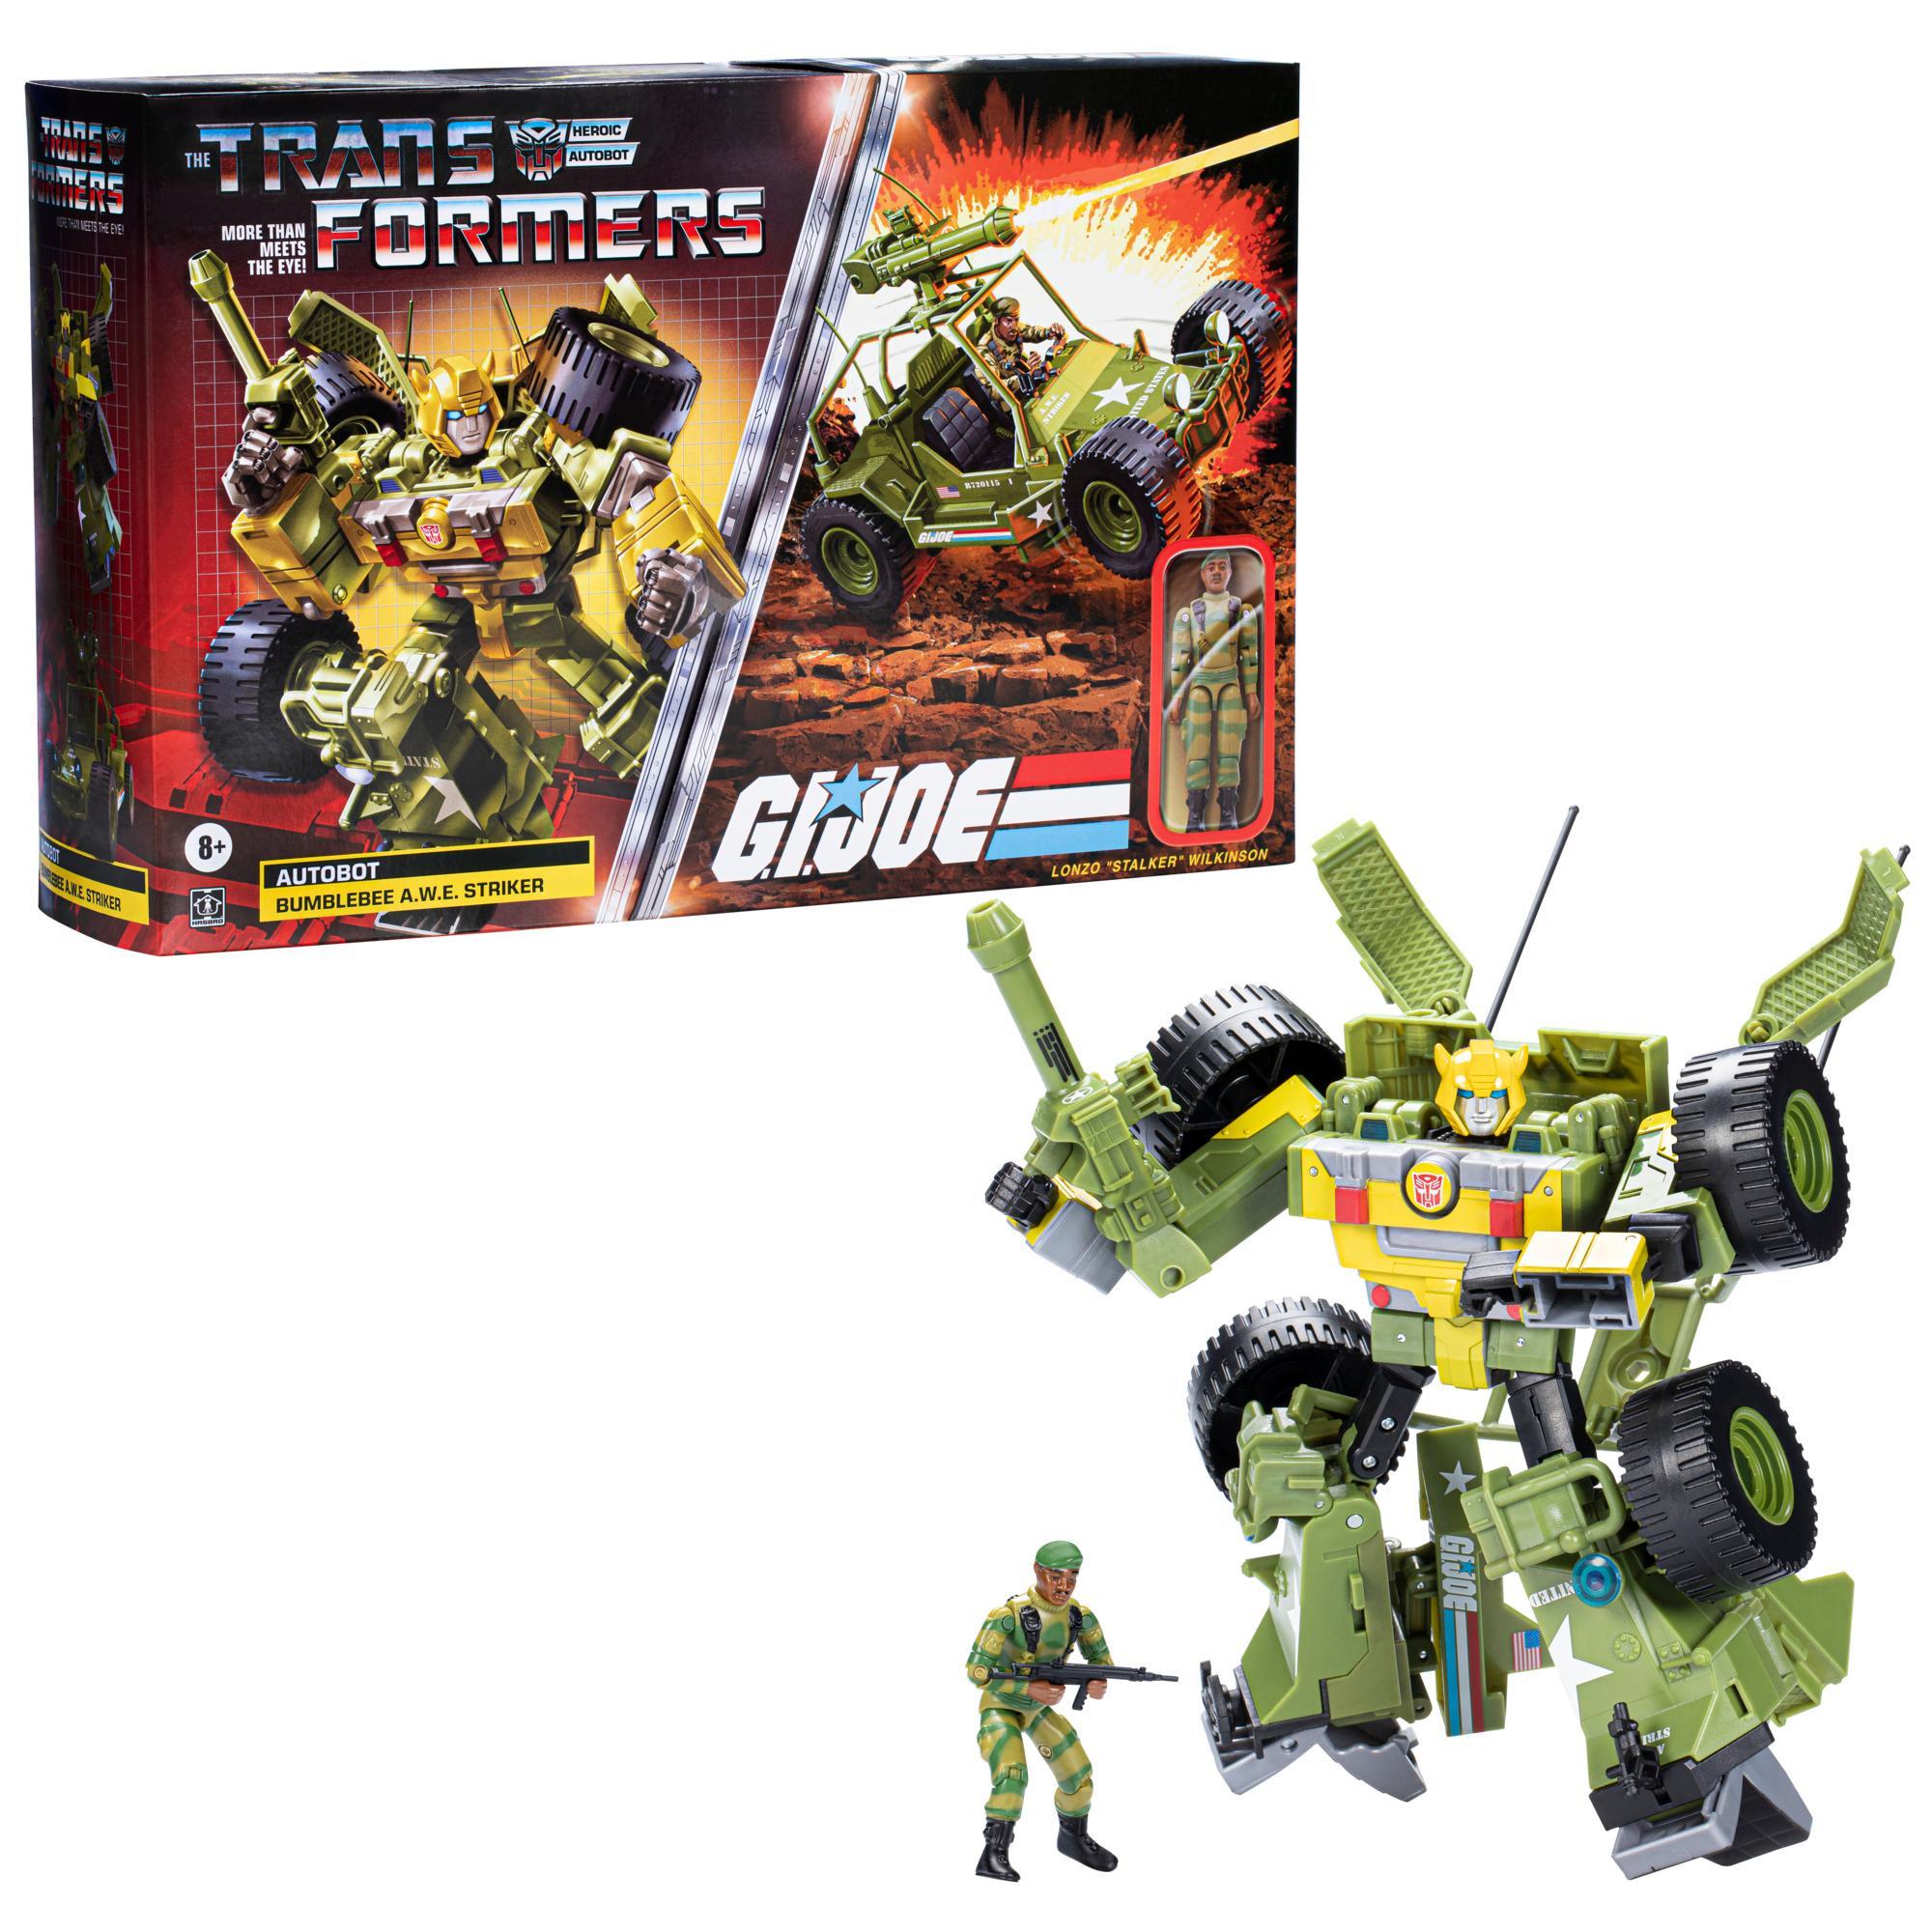 Transformers Collaborative: fusion G.I. Joe, Bumblebee A.W.E. Striker et Lonzo « Stalker » Wilkinson, à partir de 8 ans product thumbnail 1